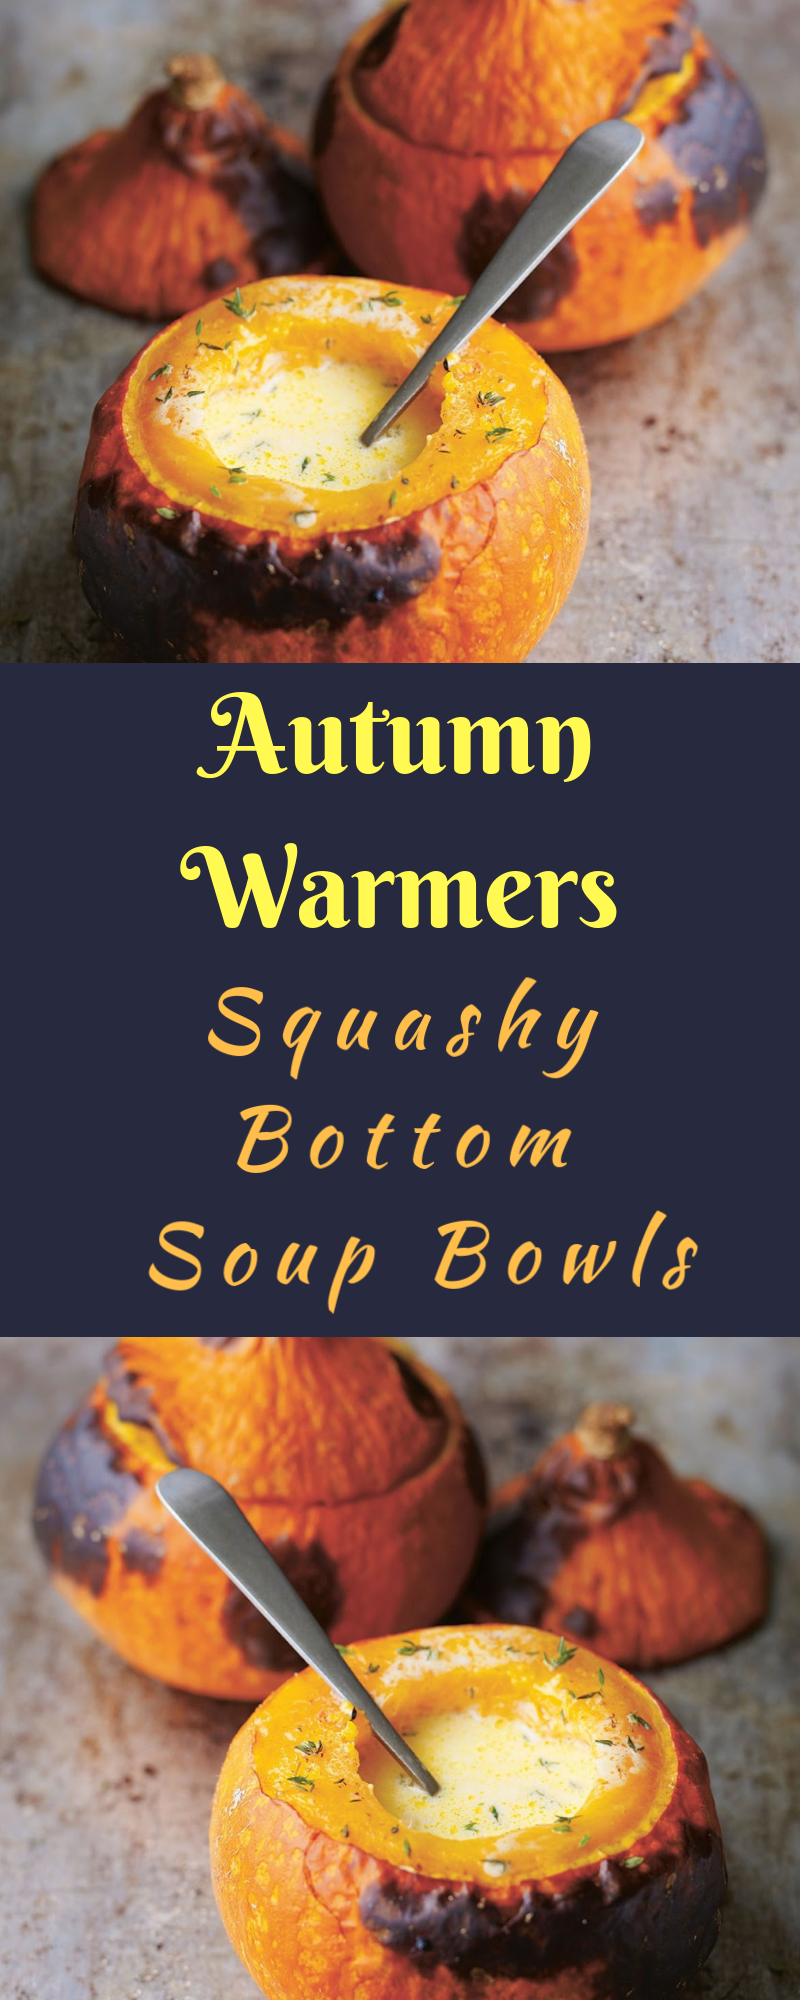 Squashy Bottom Soup Bowls